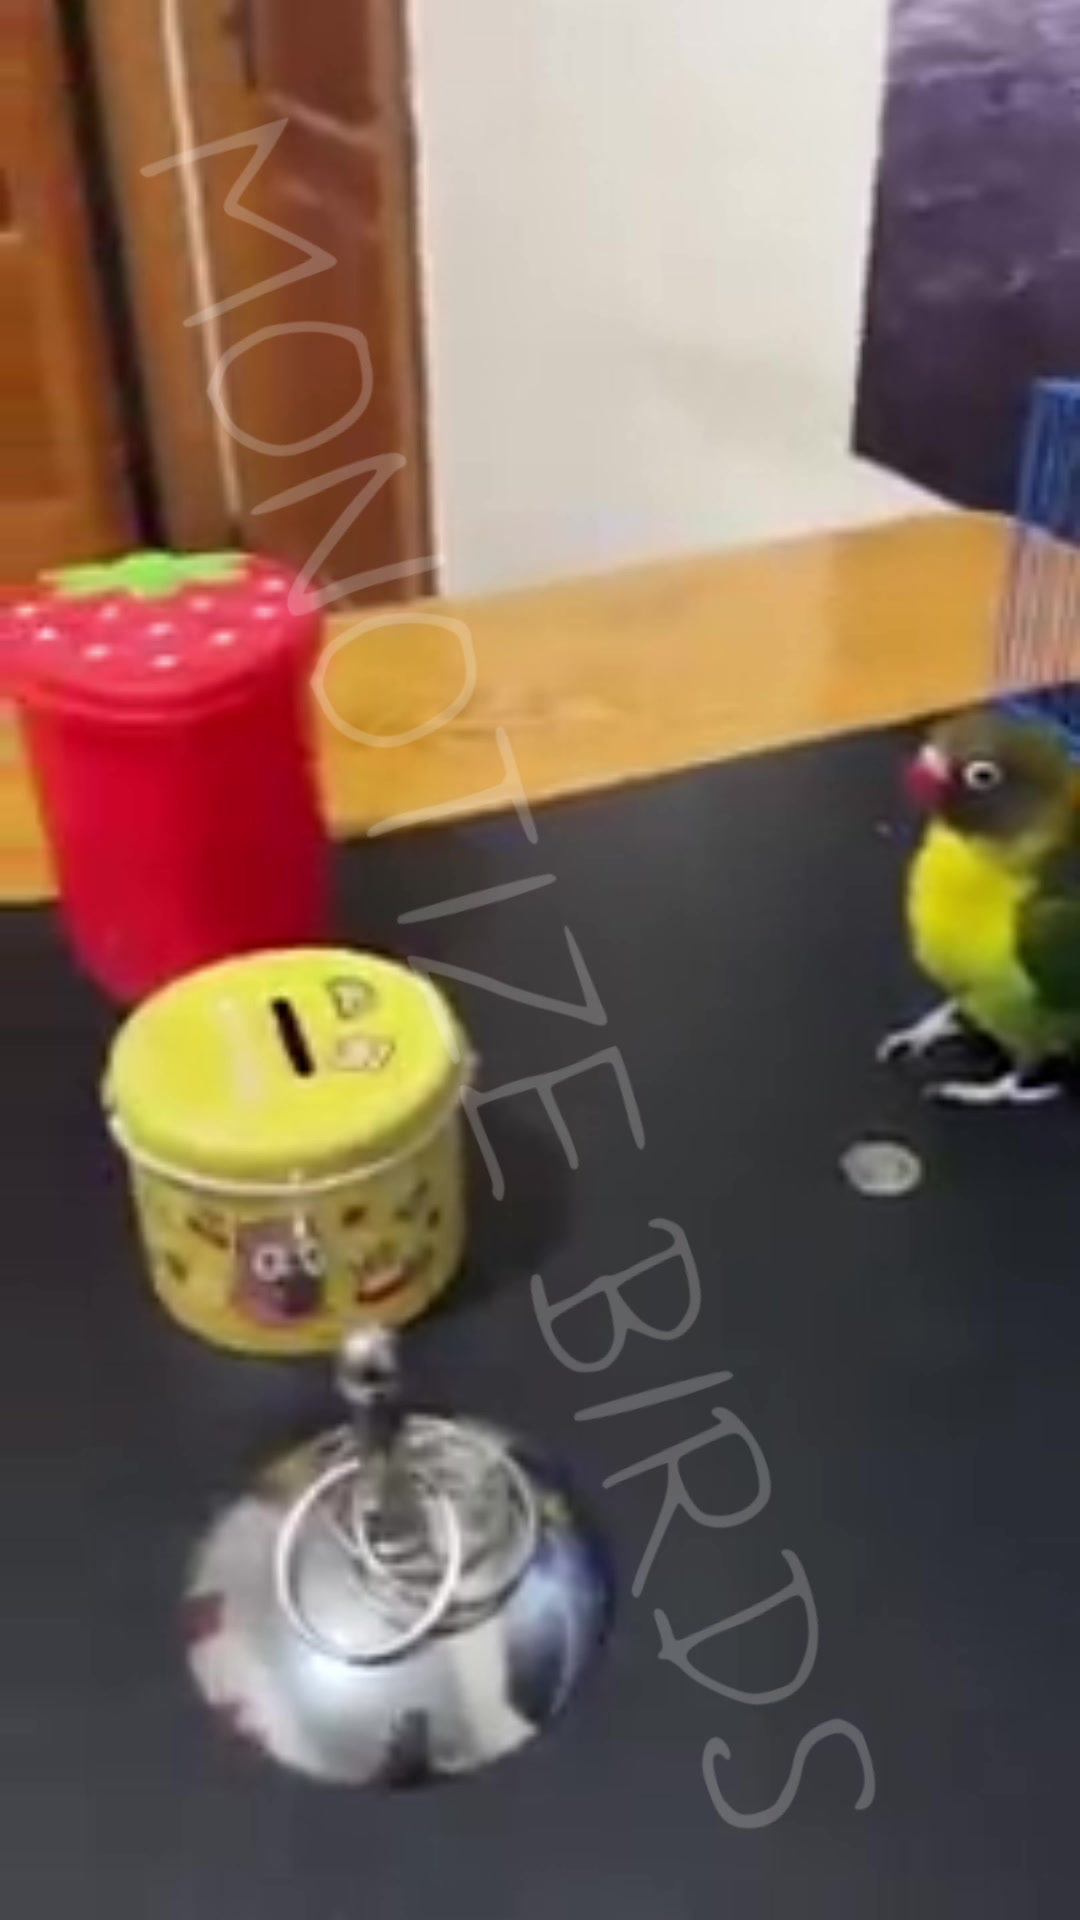 Amazing Parrot Video So Cute #Part2394 #parrot #smartparrot #birds  #smartbirds #parrotcute #animal #parrotbaby #parrots #viral #short